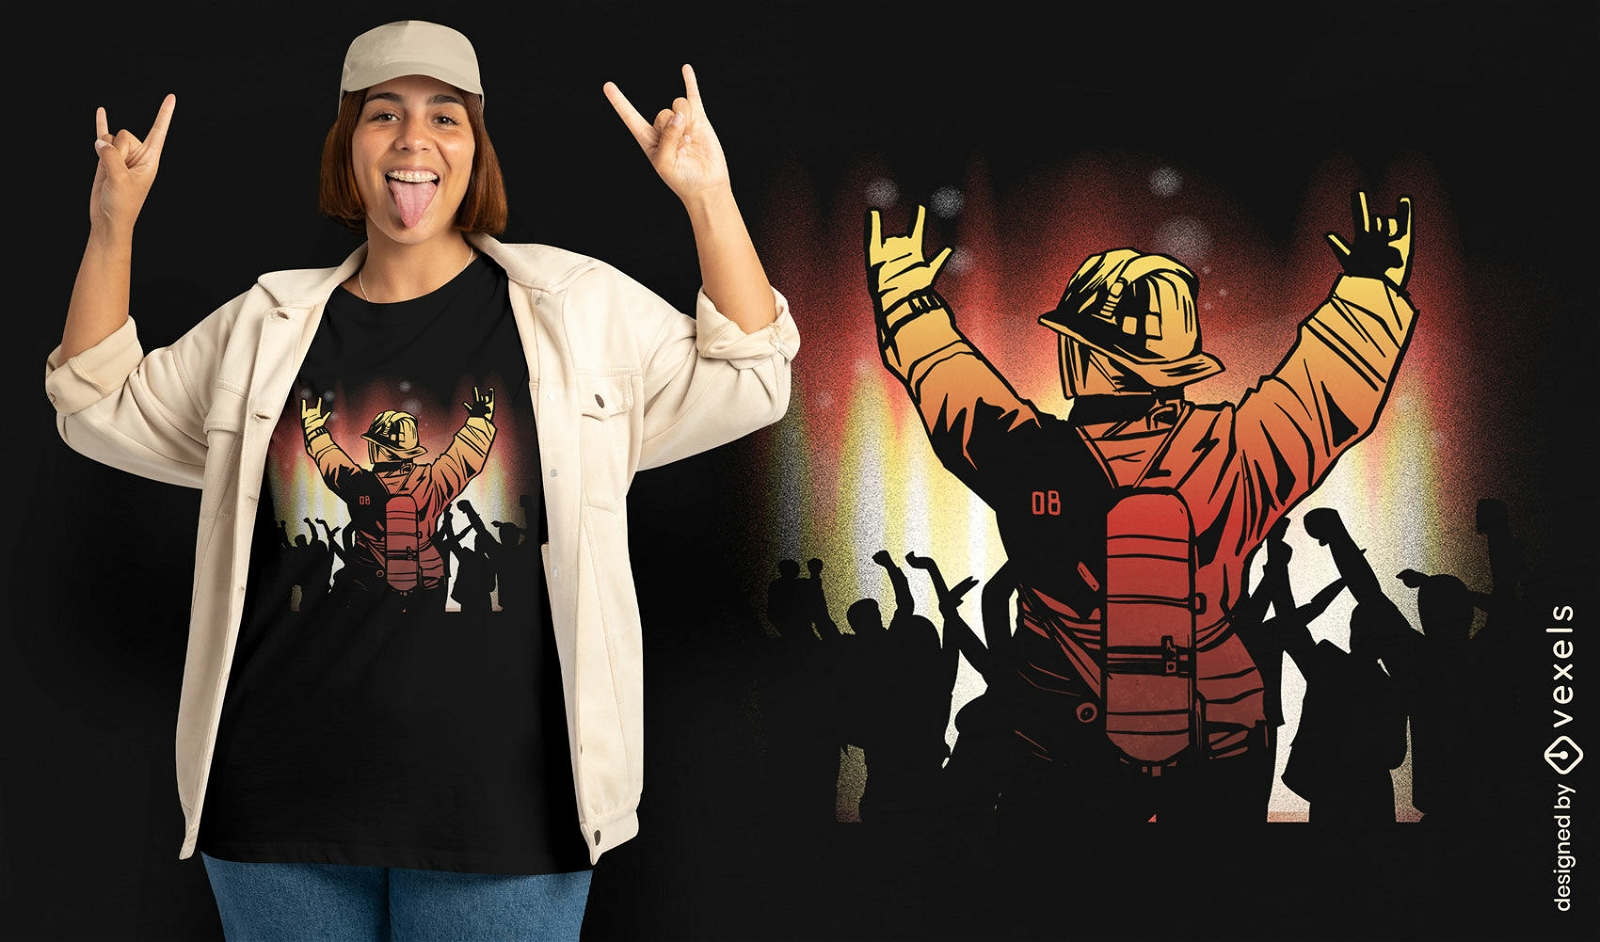 Feuerwehrmann tanzt im Party-T-Shirt-Design